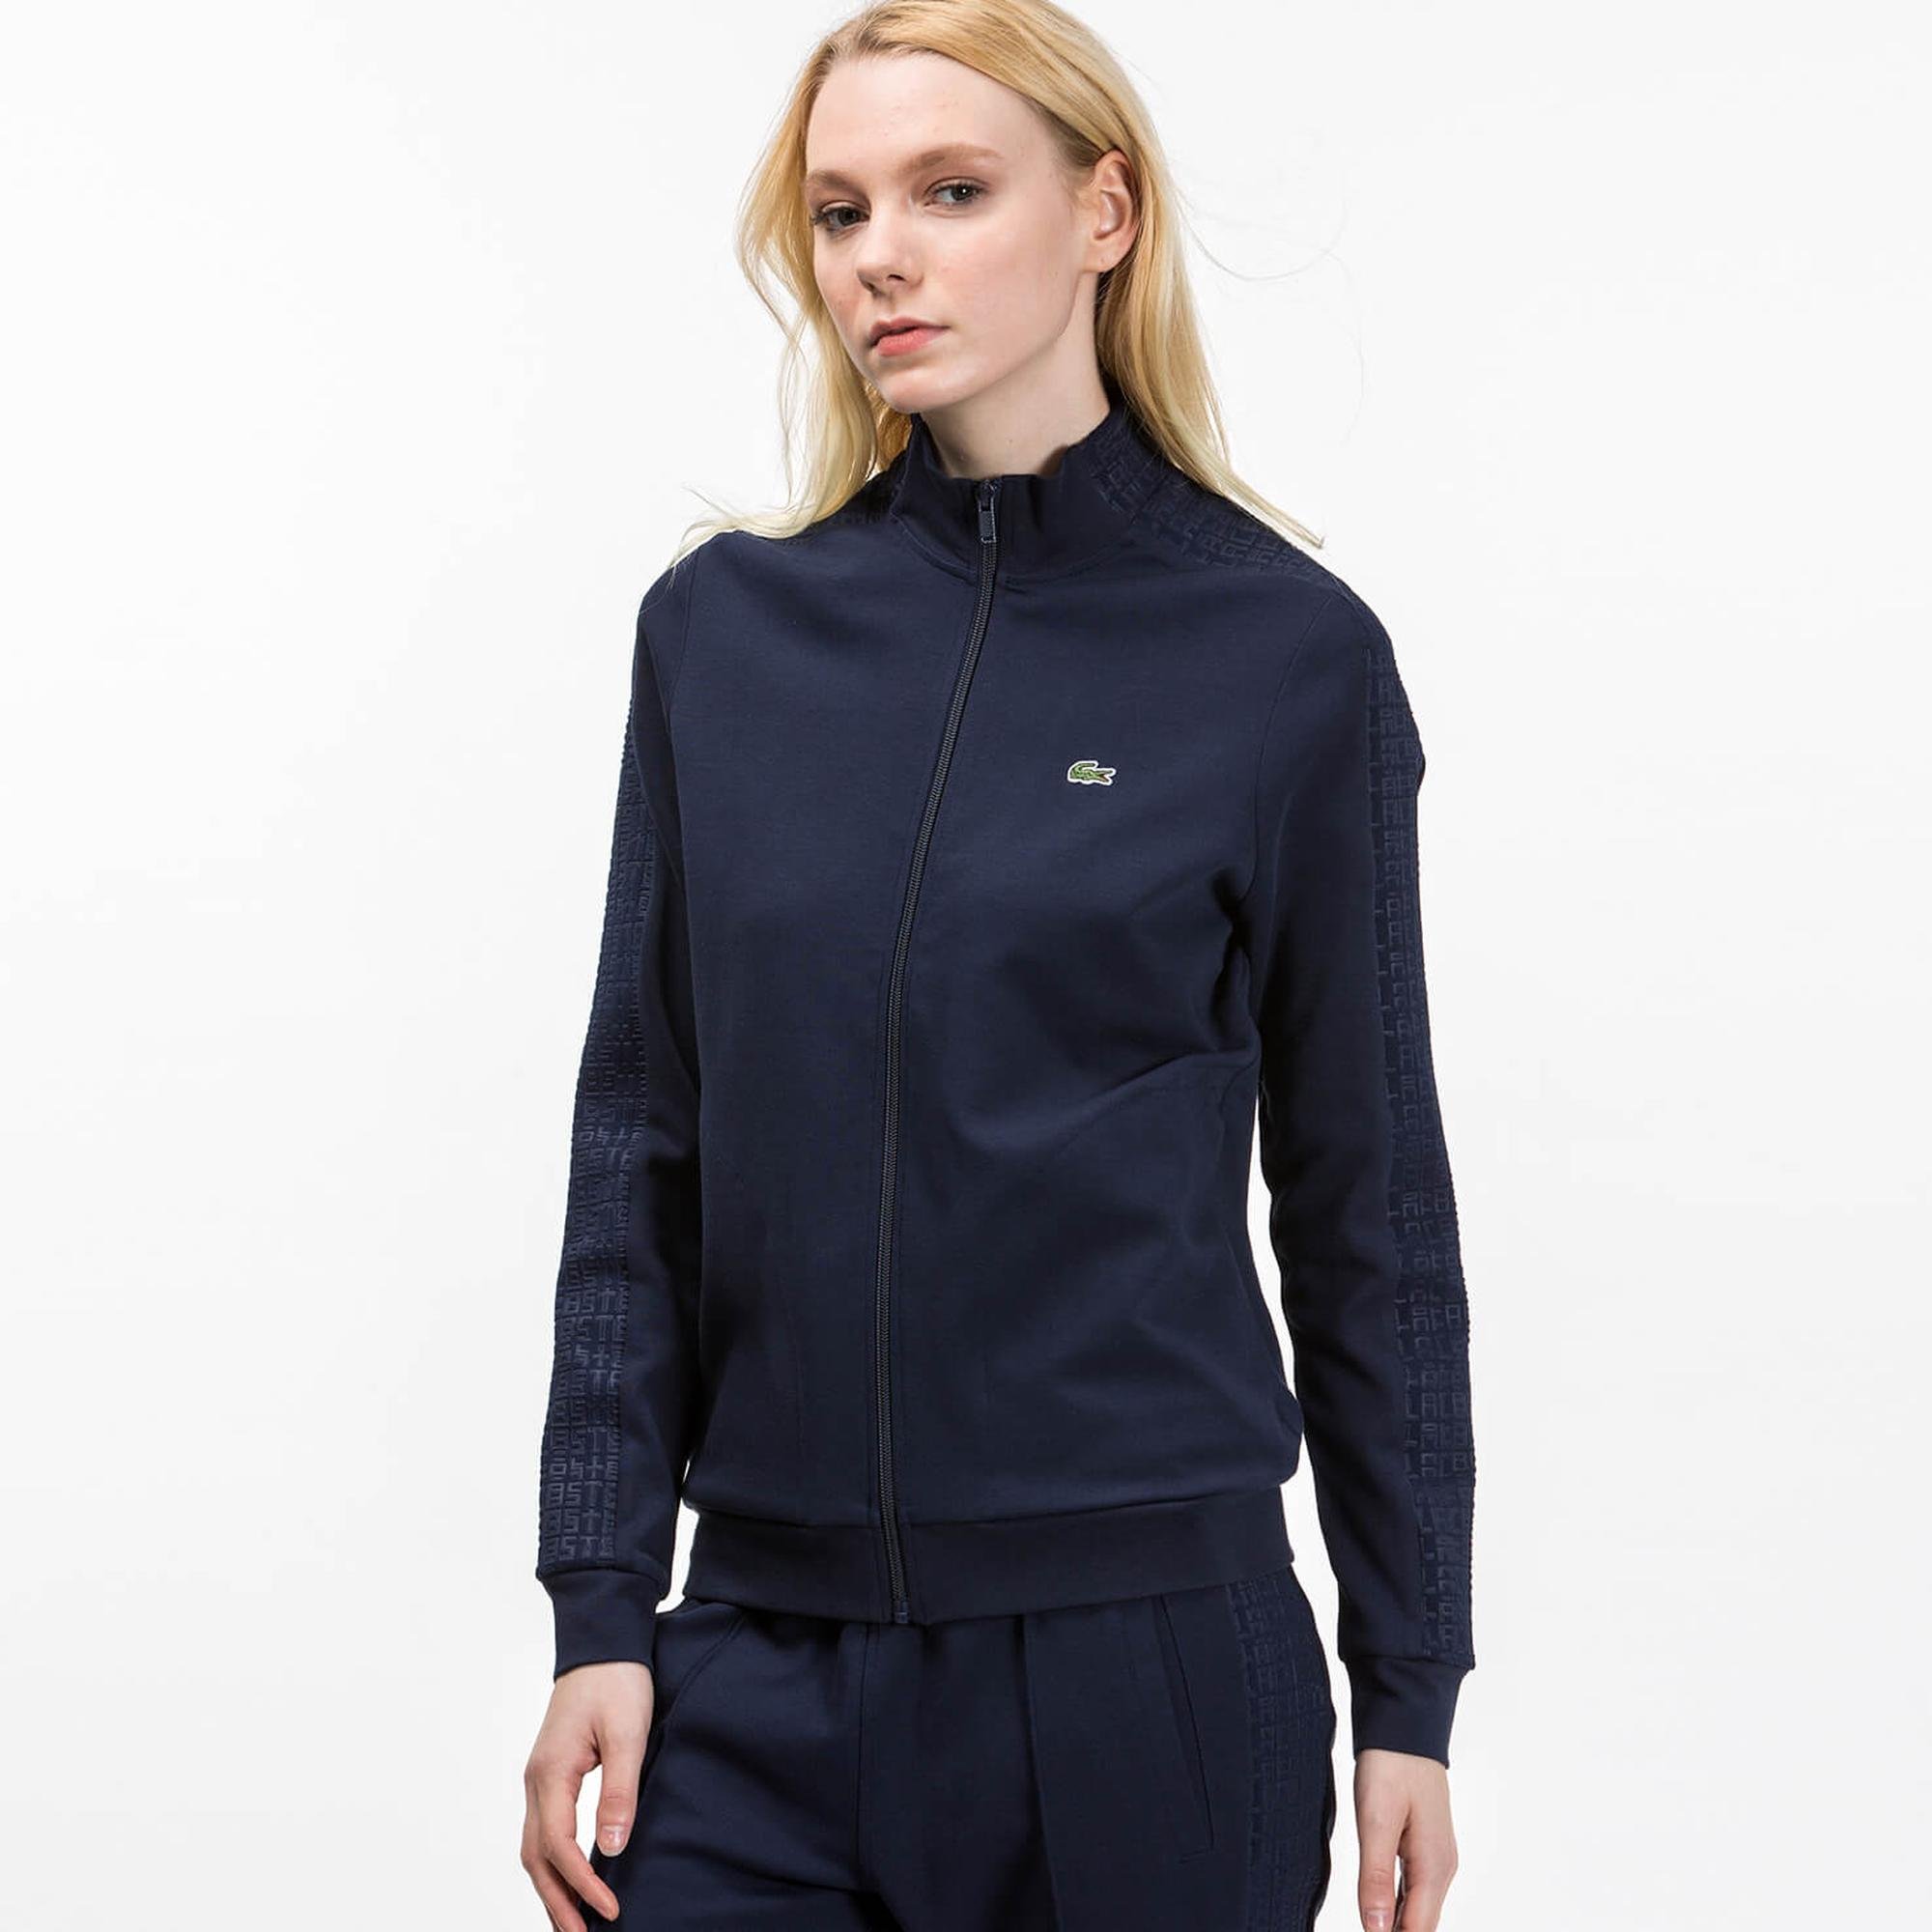 Lacoste Women's SPORT Tennis Zippered Two-Ply Sweatshirt